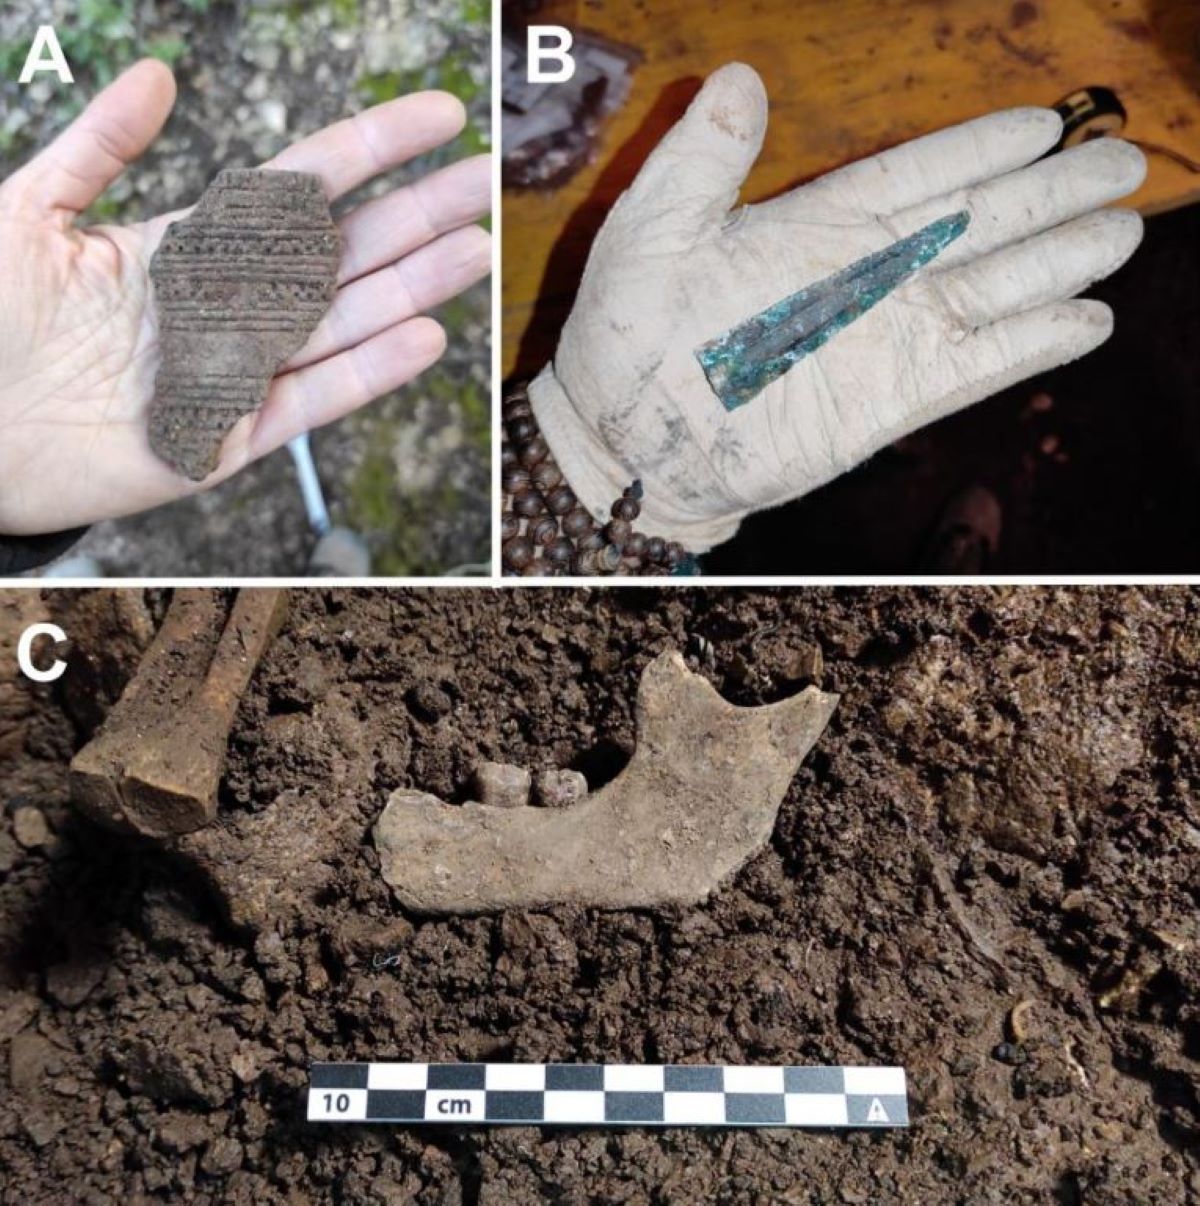 χιλιάδες ανθρώπινα οστά βρέθηκαν σε σπηλιά-νεκροταφείο – τι προβληματίζει τους αρχαιολόγους